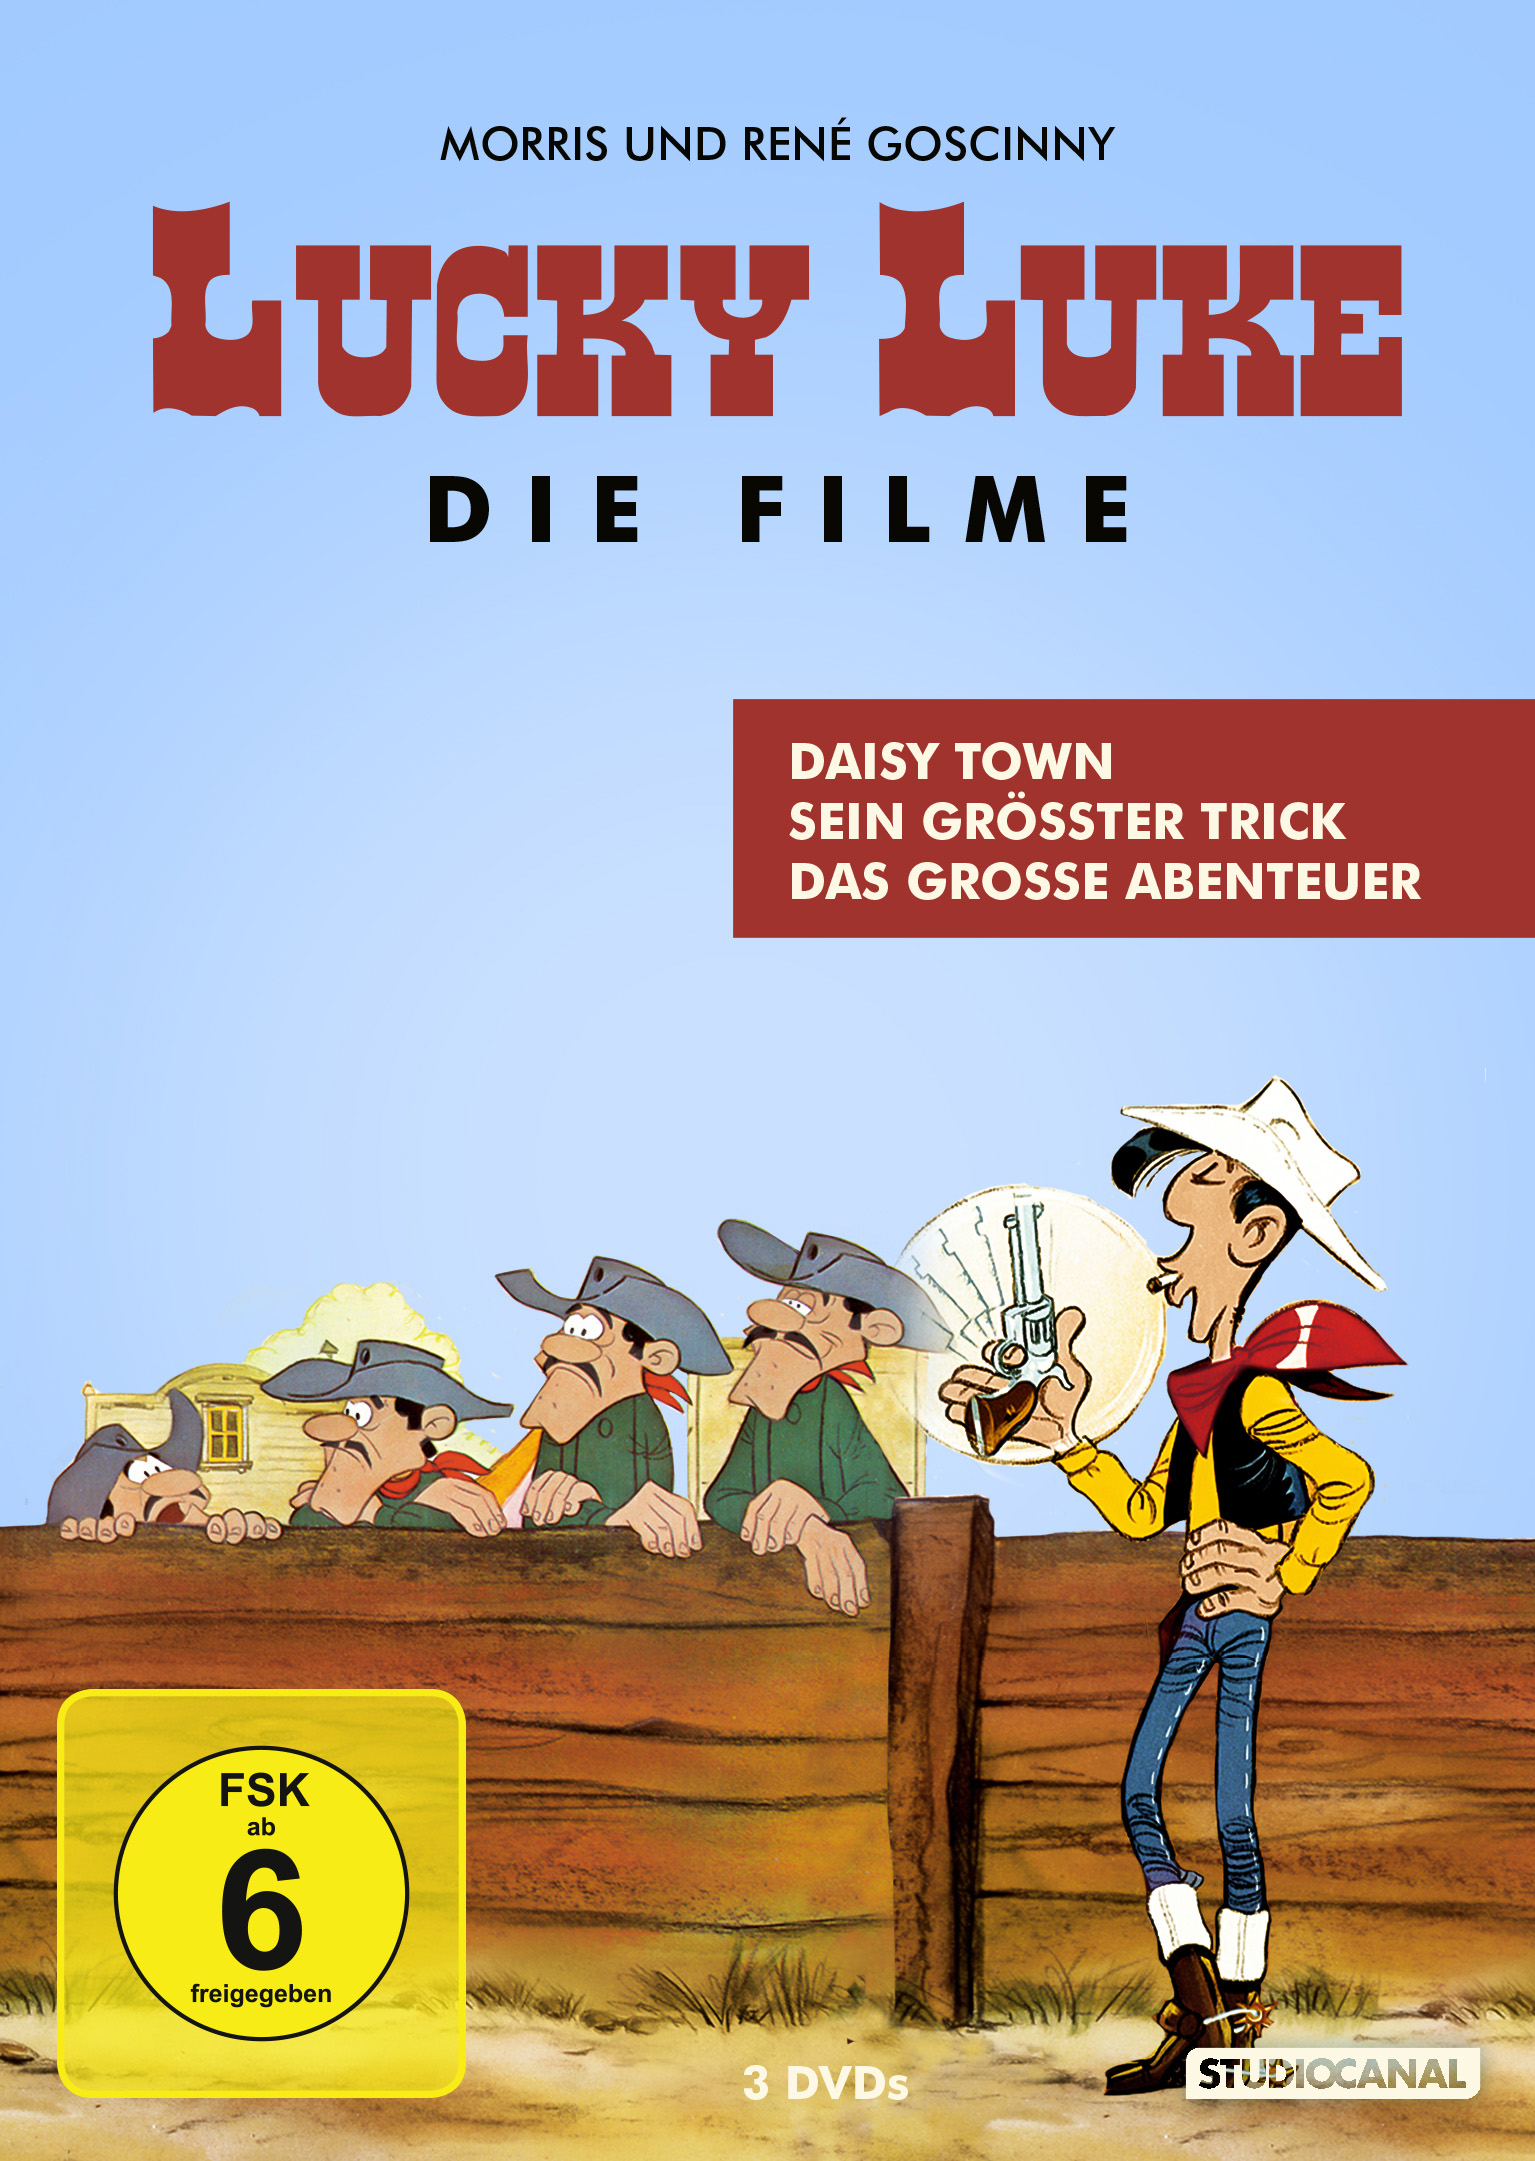 Daisy Town, Sein grösster grosse Das Trick, Abenteuer DVD